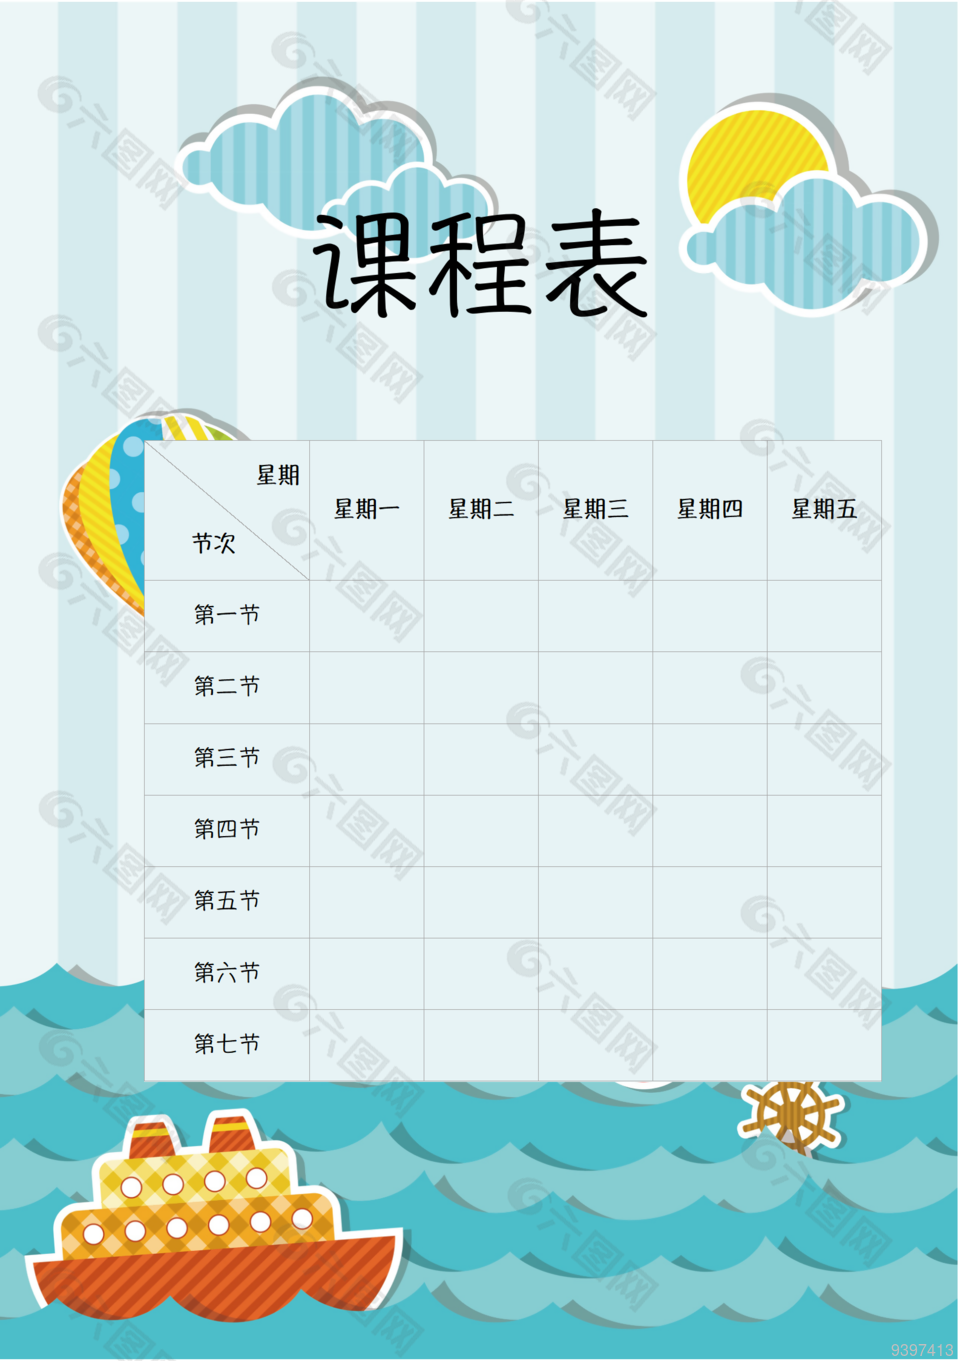 卡通童趣海洋风幼儿园儿童课程表模板下载